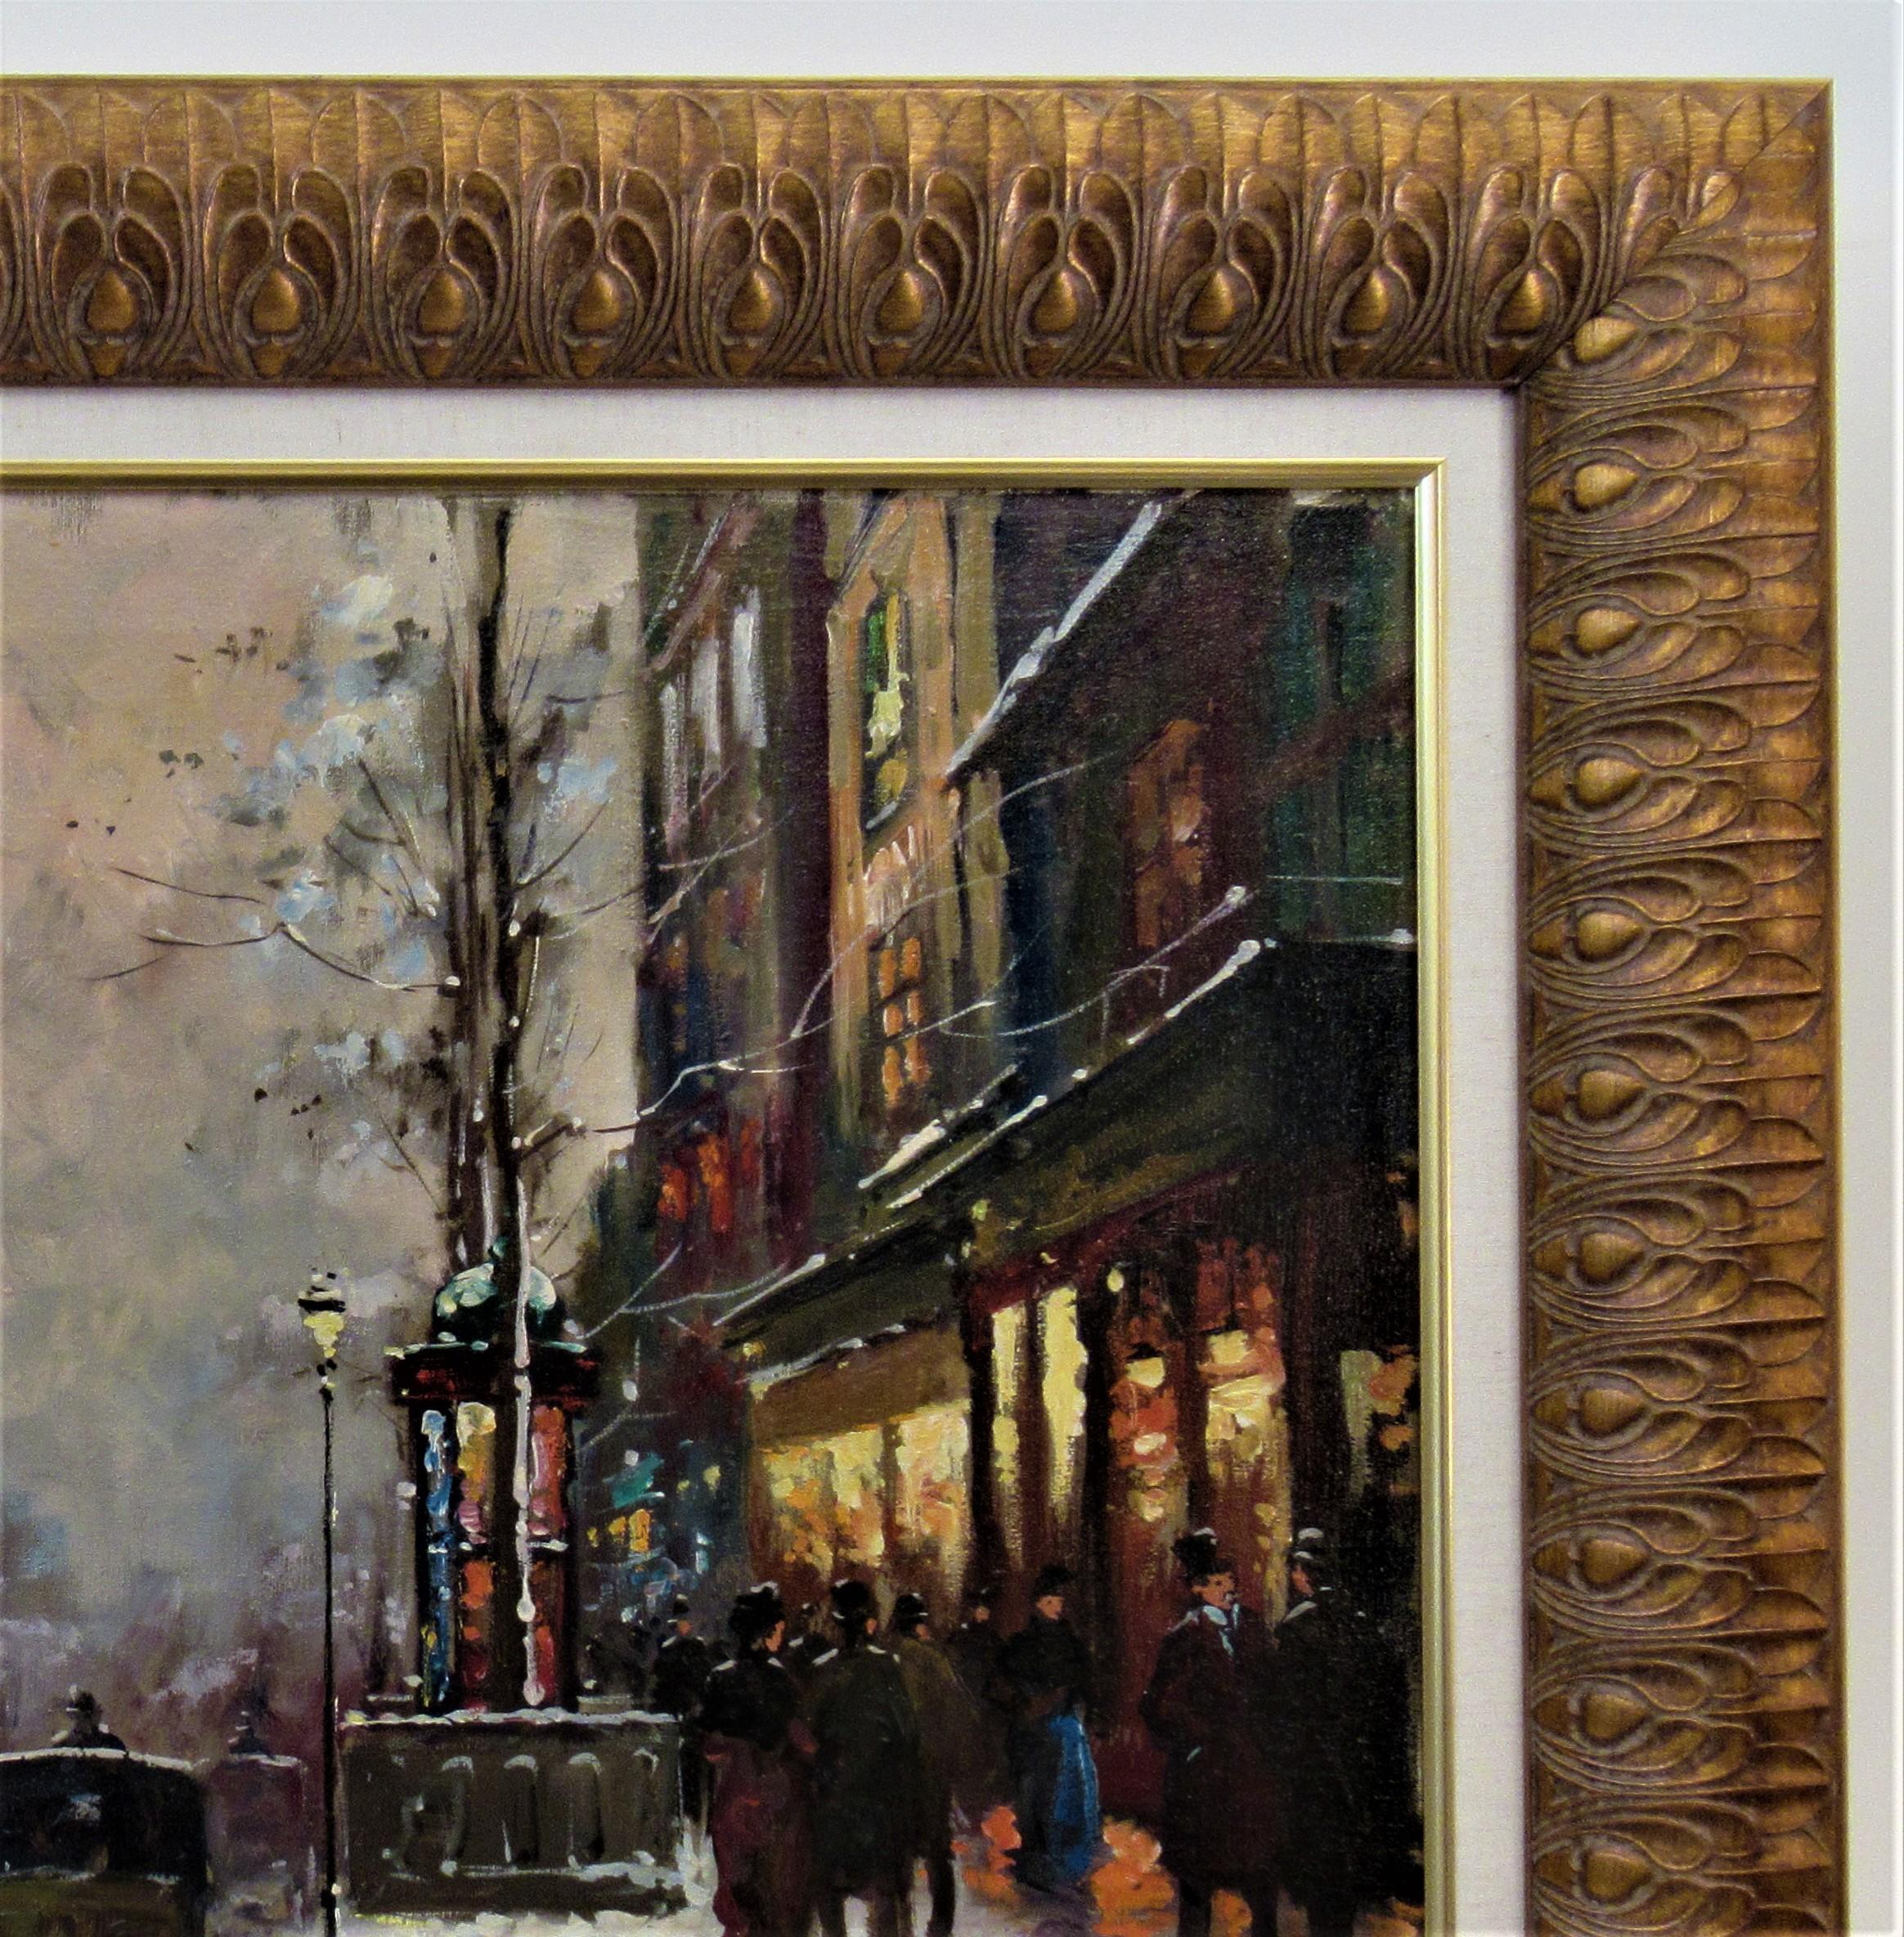 Porte Saint Denis, Paris - Impressionist Painting by Francois Gerome